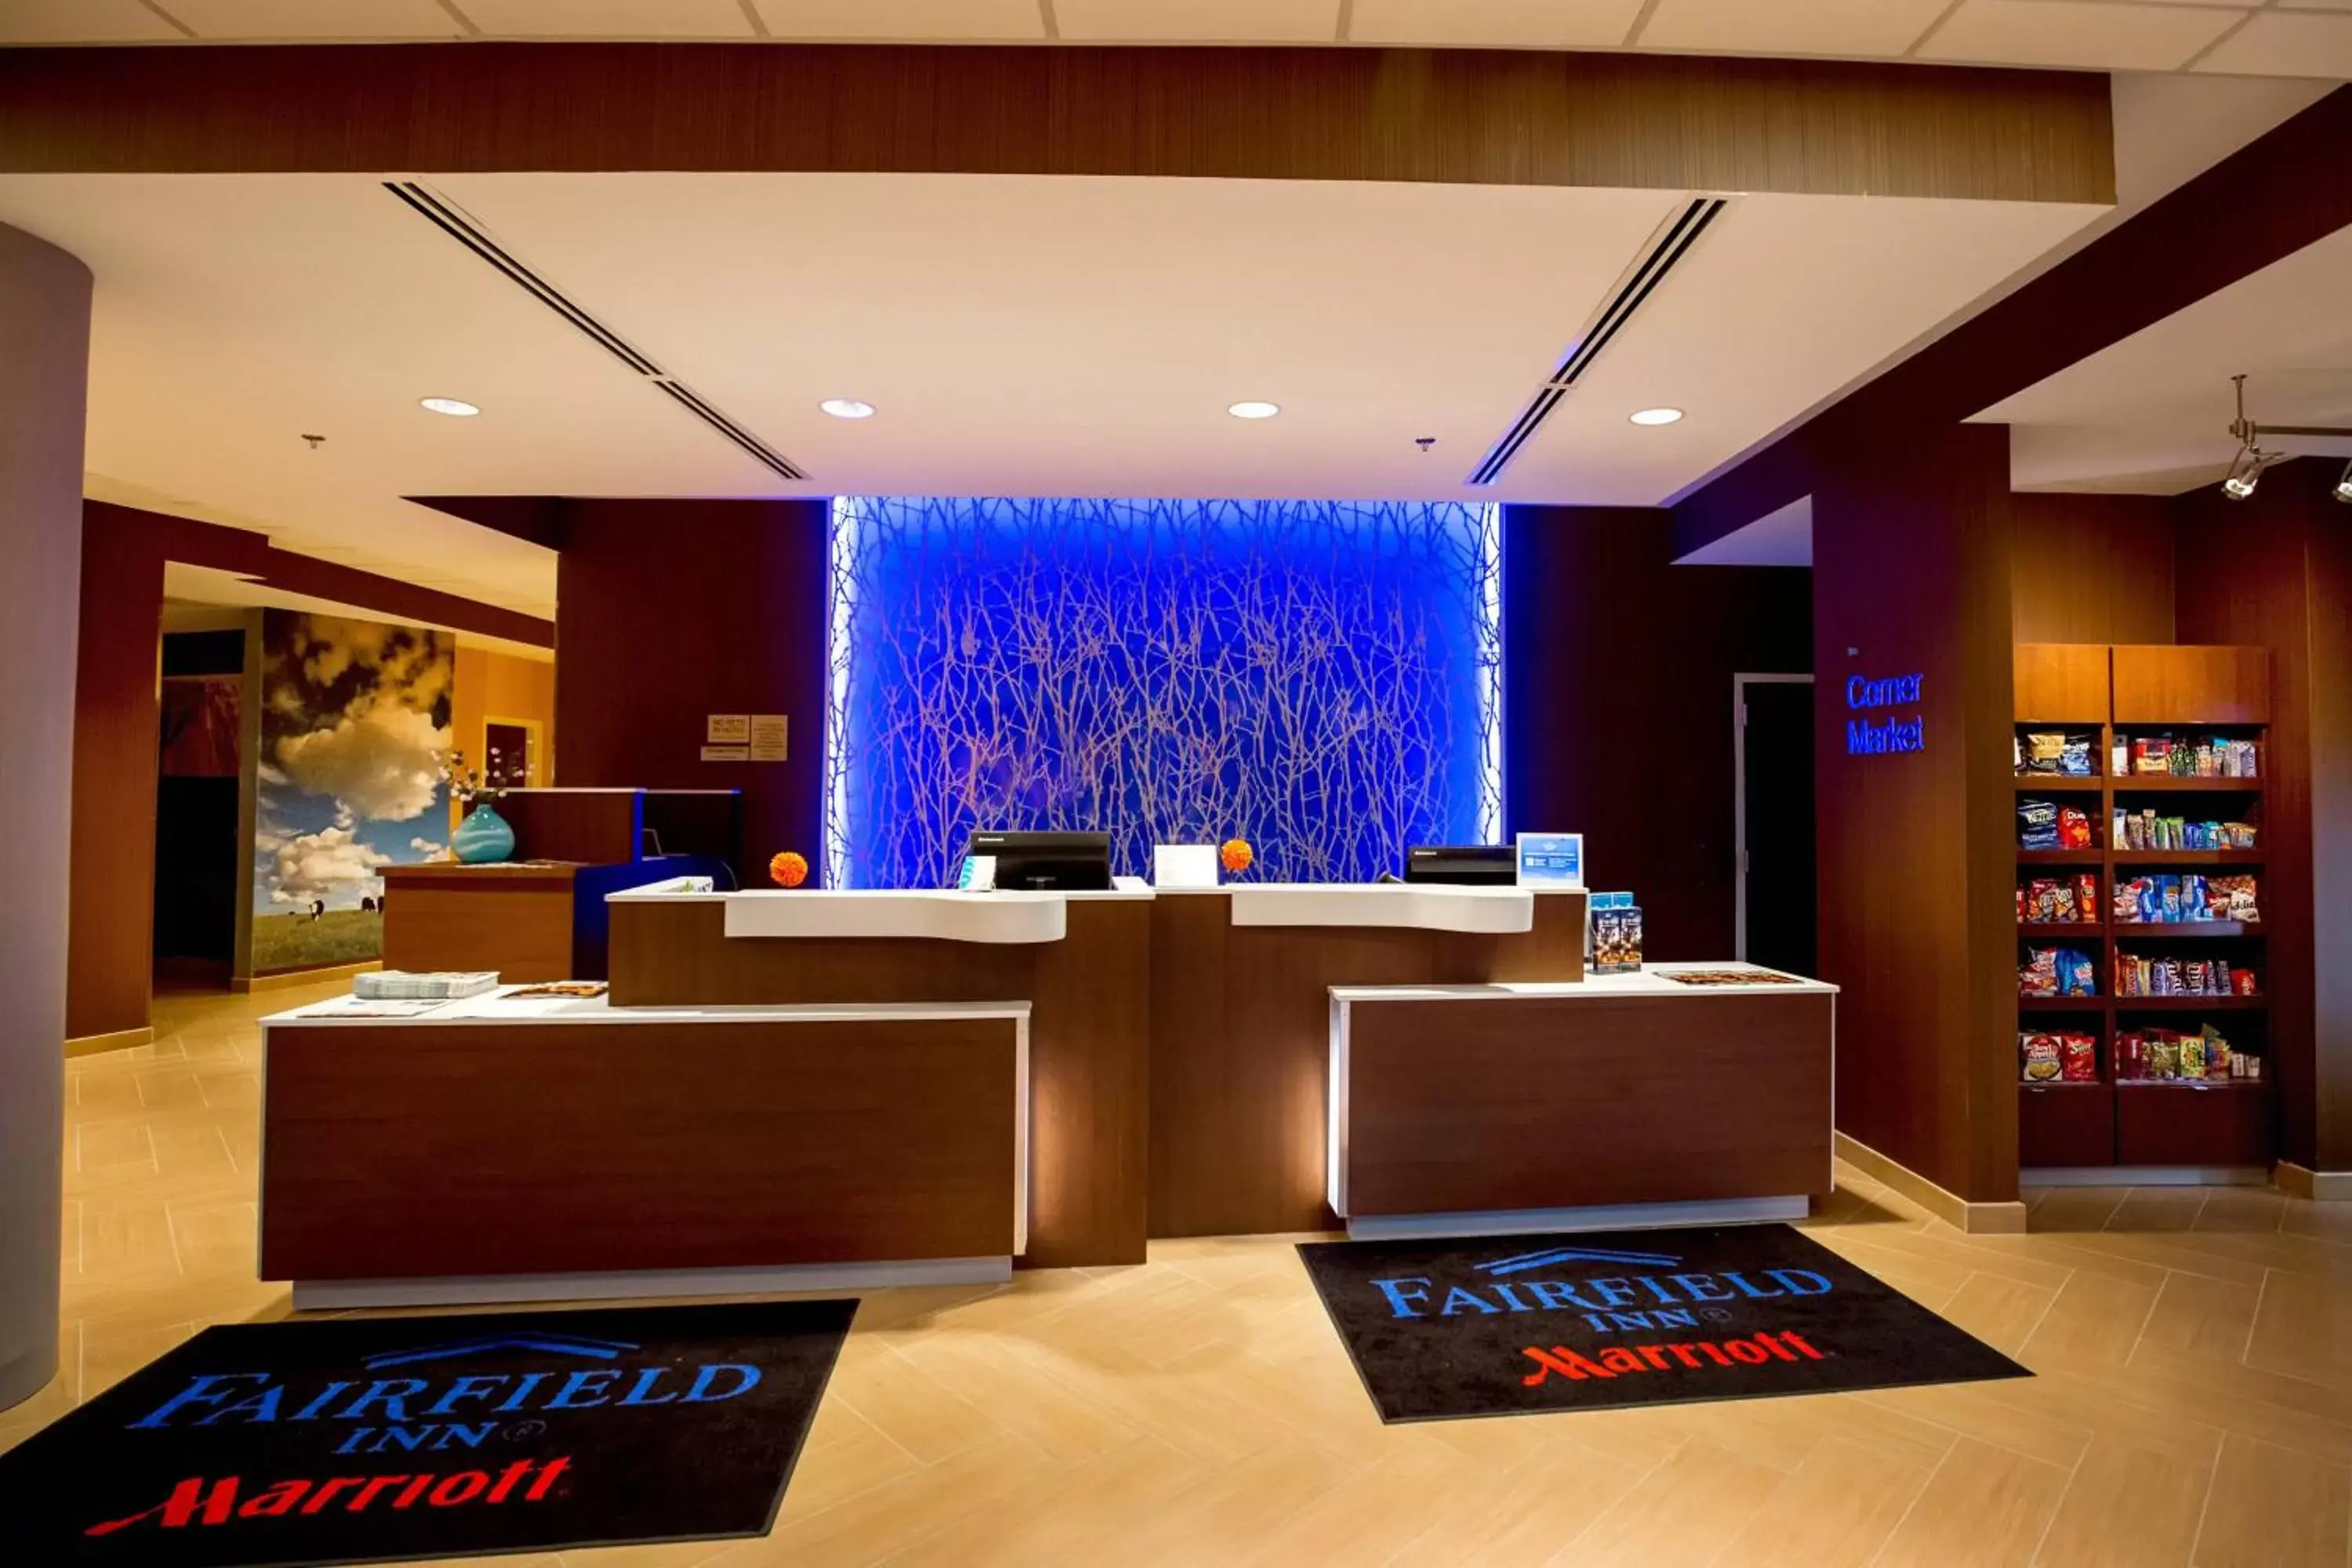 Lobby or reception in Fairfield Inn & Suites by Marriott Richmond Midlothian